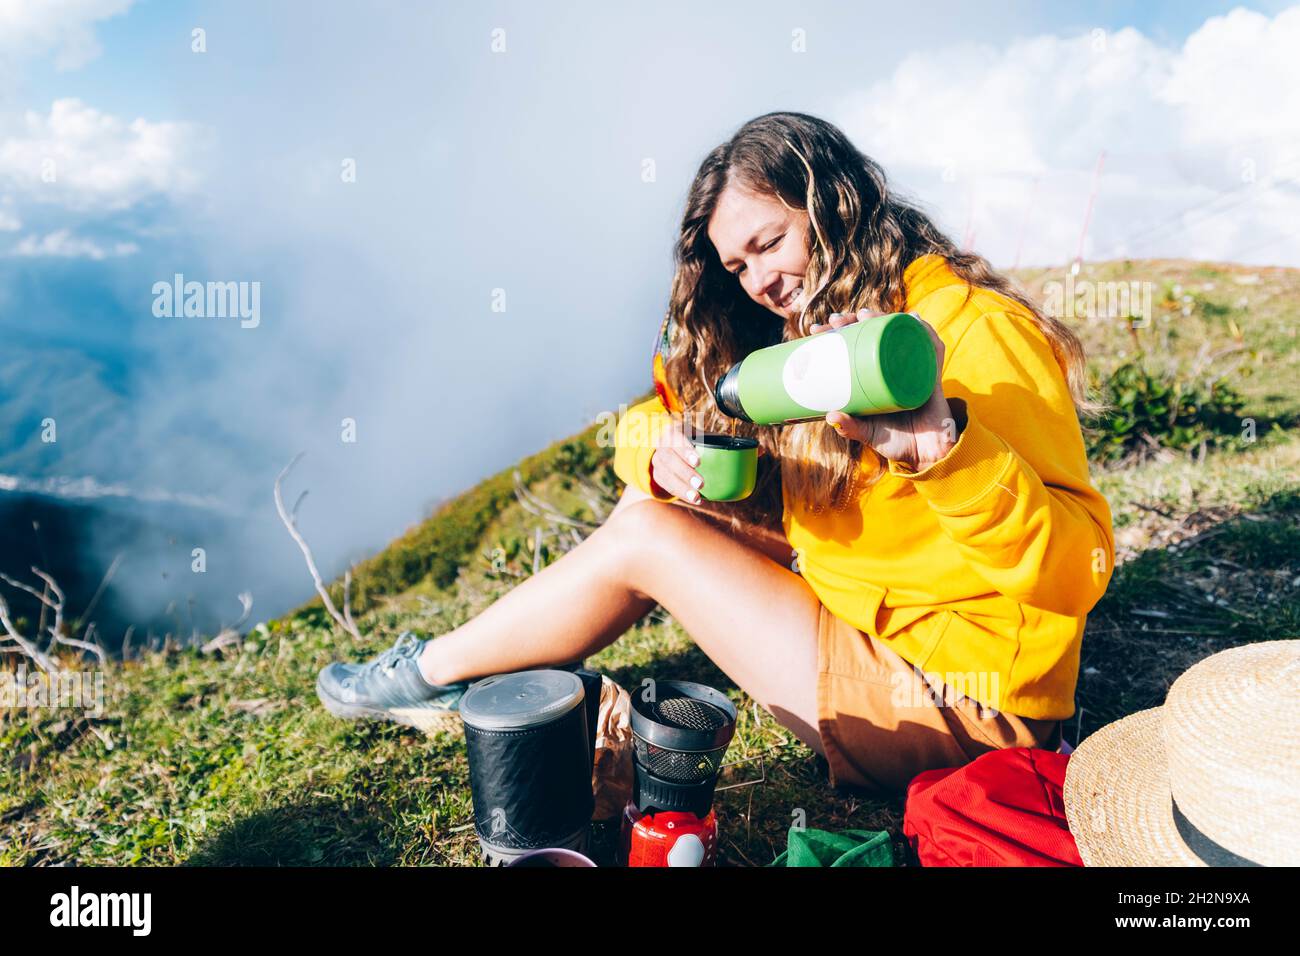 Donna che versa la bevanda dal contenitore isolato della bevanda mentre si siede sulla montagna durante la giornata di sole Foto Stock